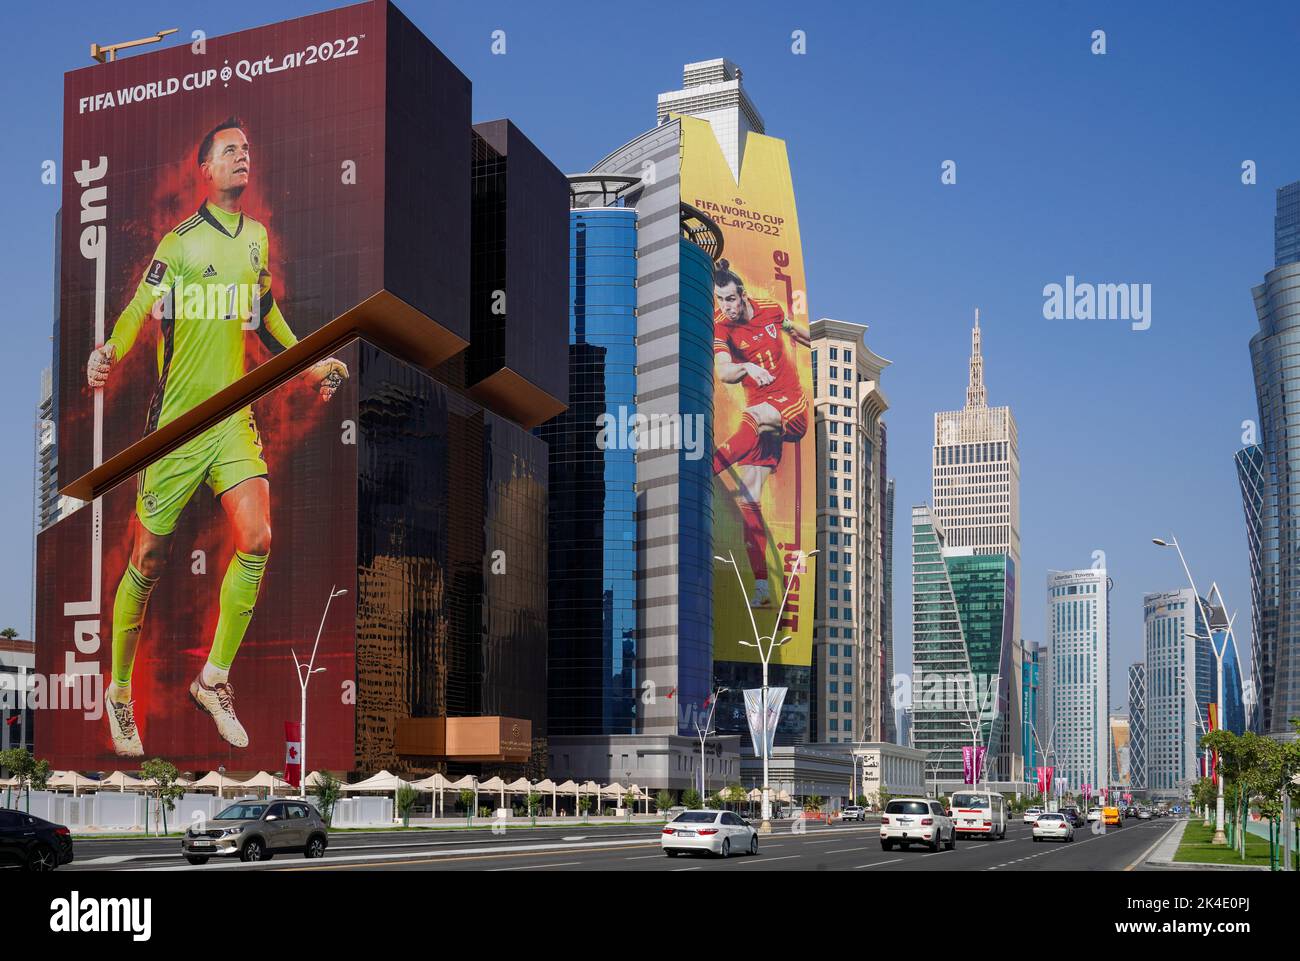 La ligne aérienne de Doha en avance sur la coupe du monde de la FIFA, Qatar 2022 Banque D'Images